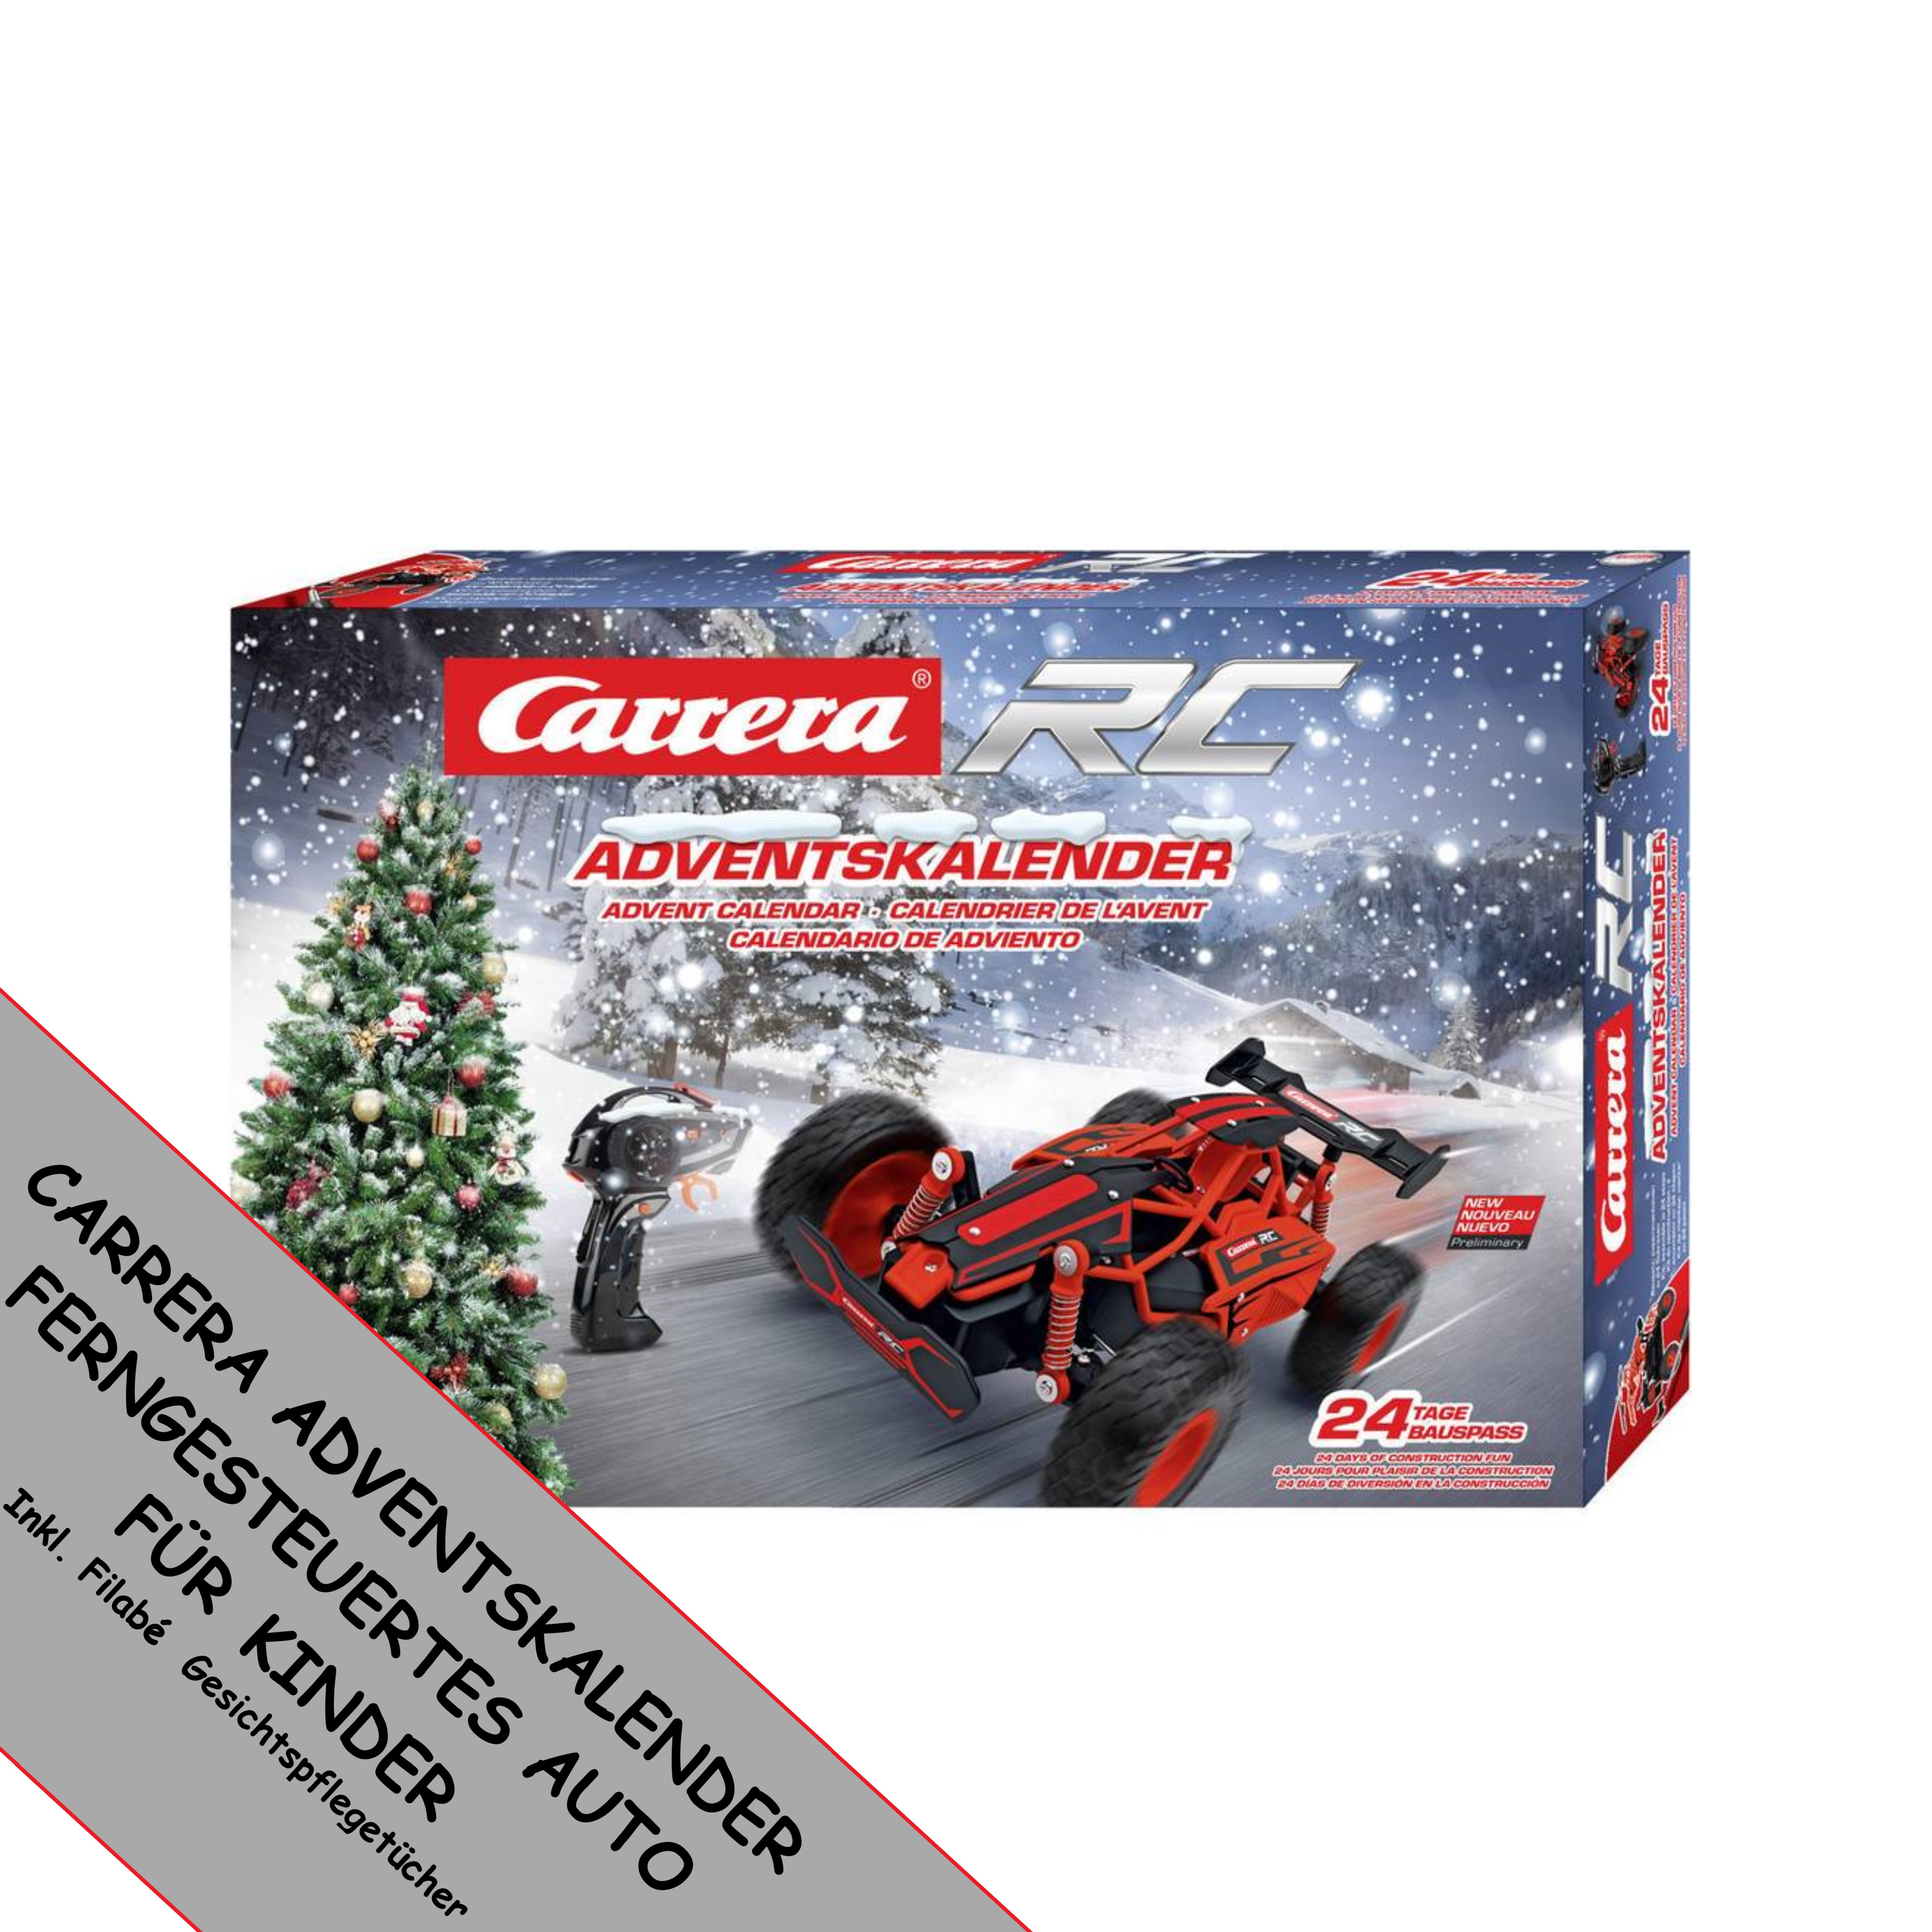 Carrera Adventskalender 2021 Autokalender Weihnachtsgeschenk für Jungs & Mädchen